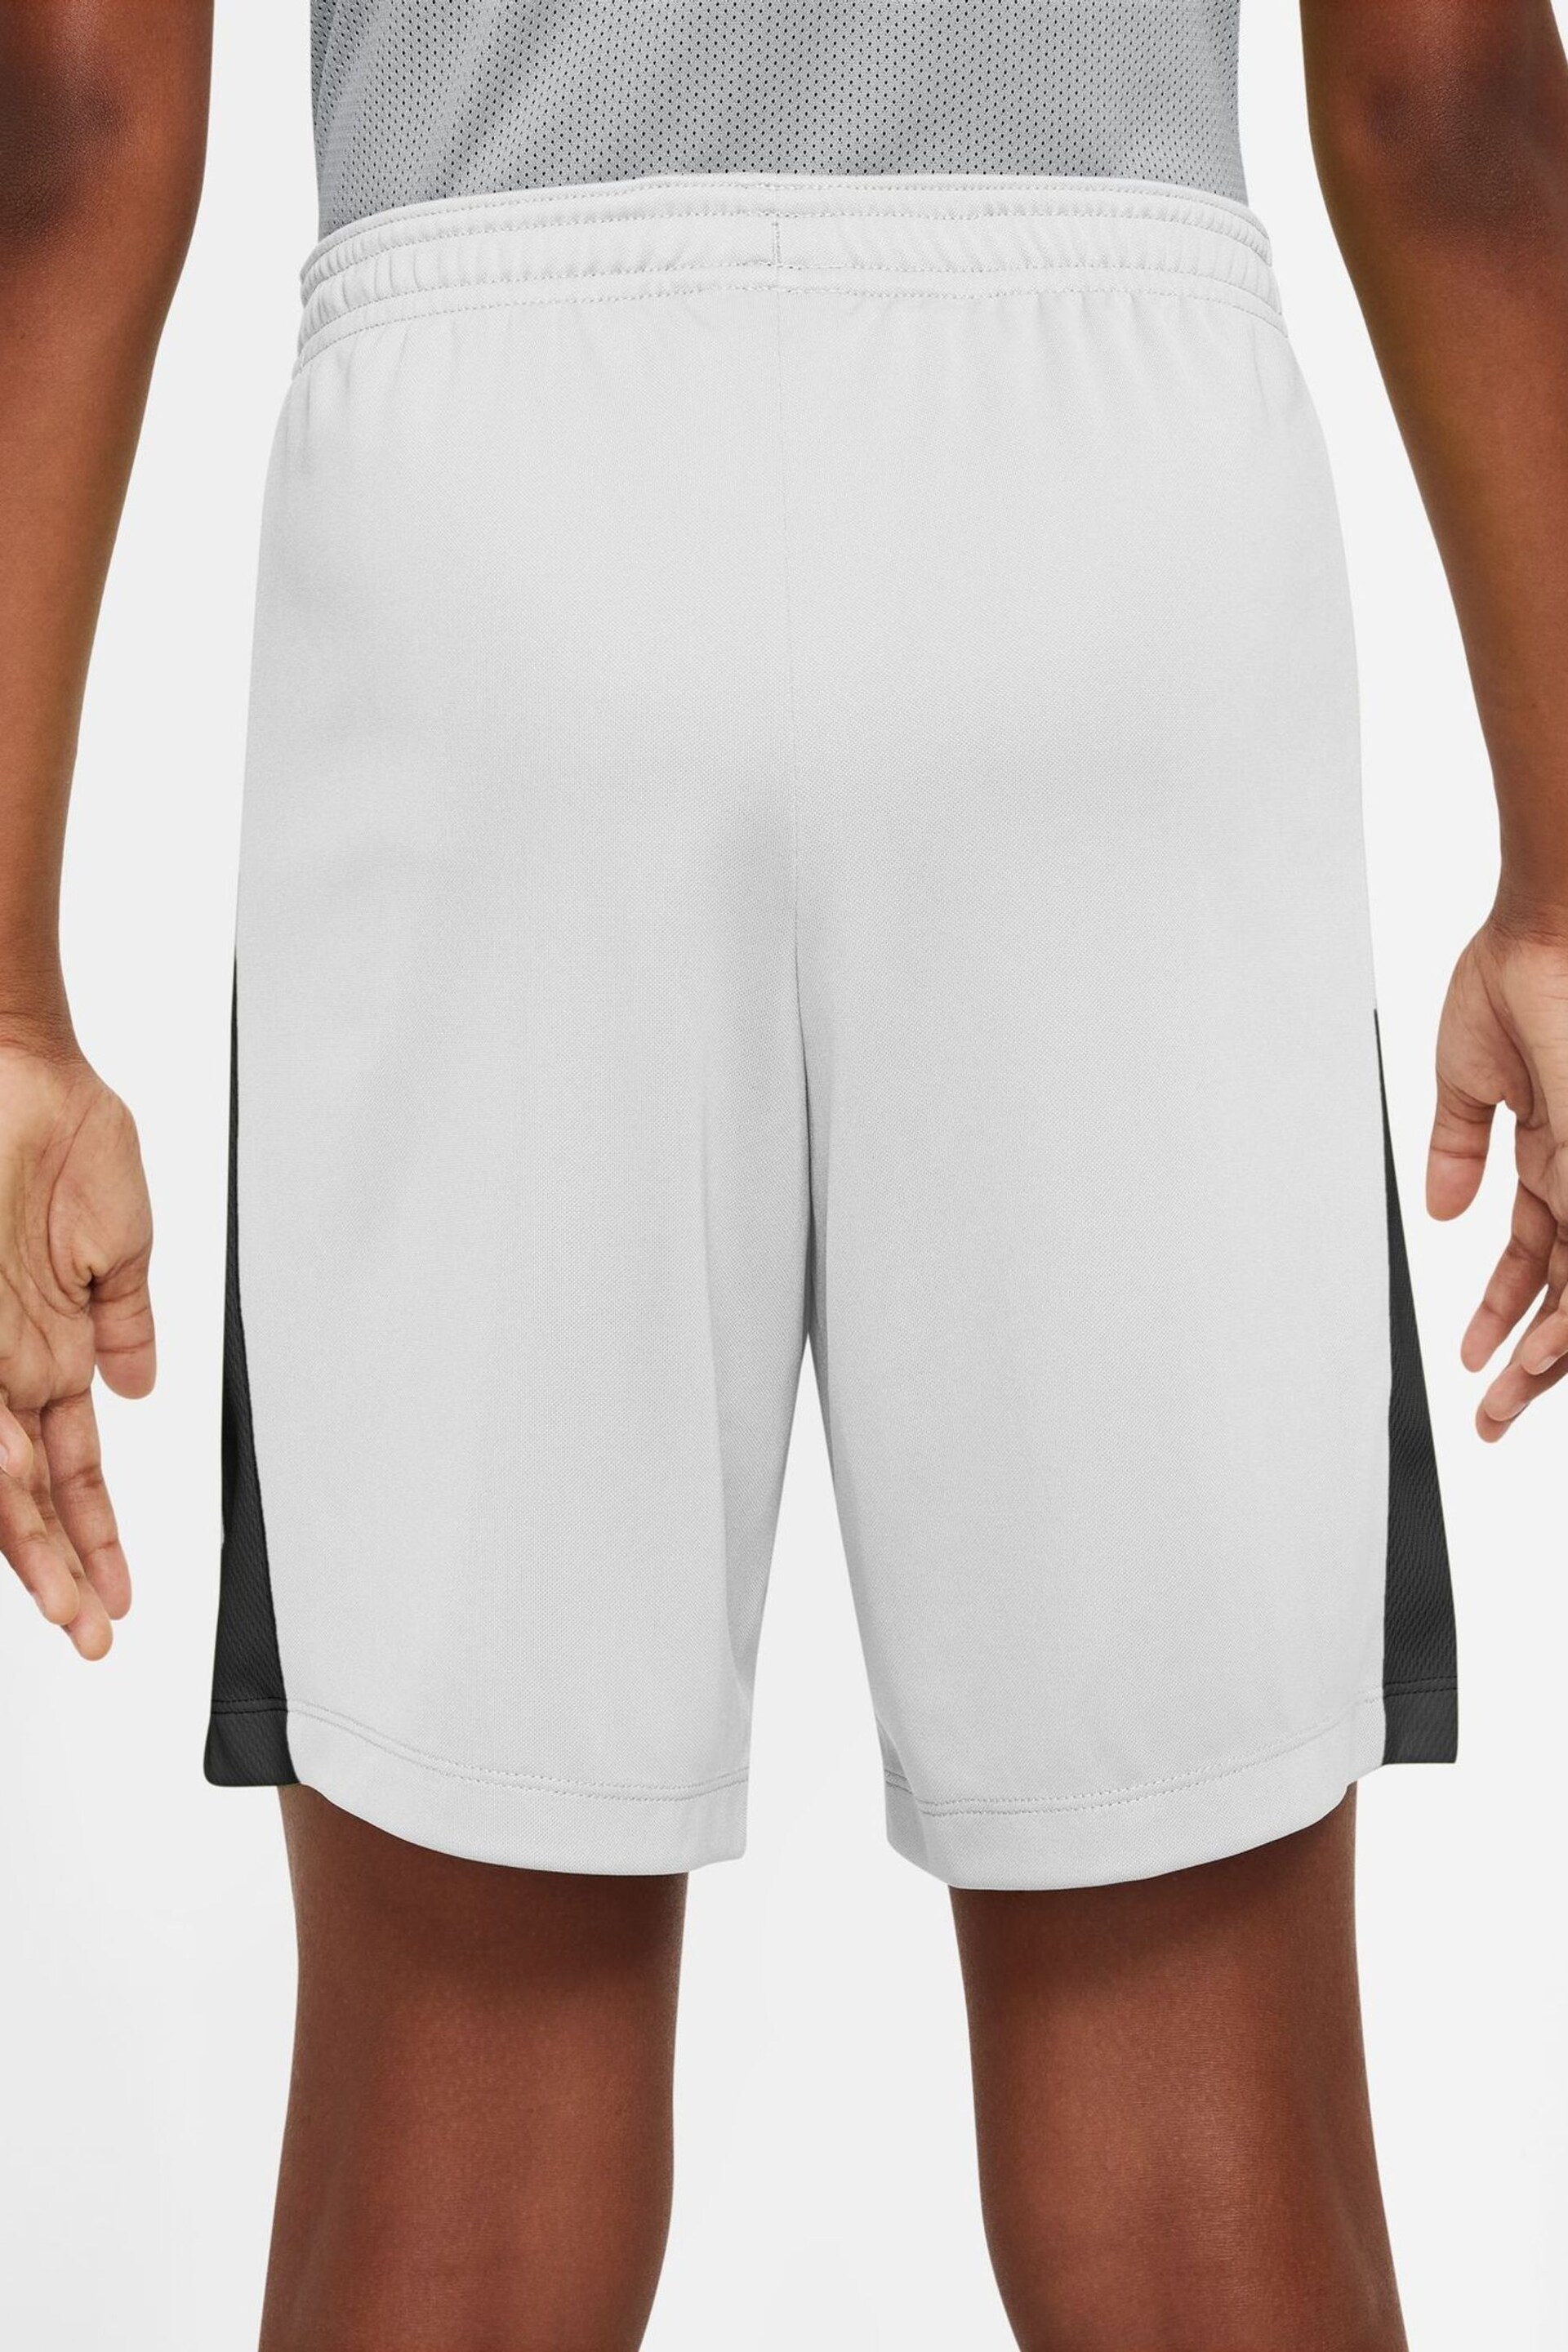 Nike White Dri-FIT Academy Training Shorts - Image 2 of 10